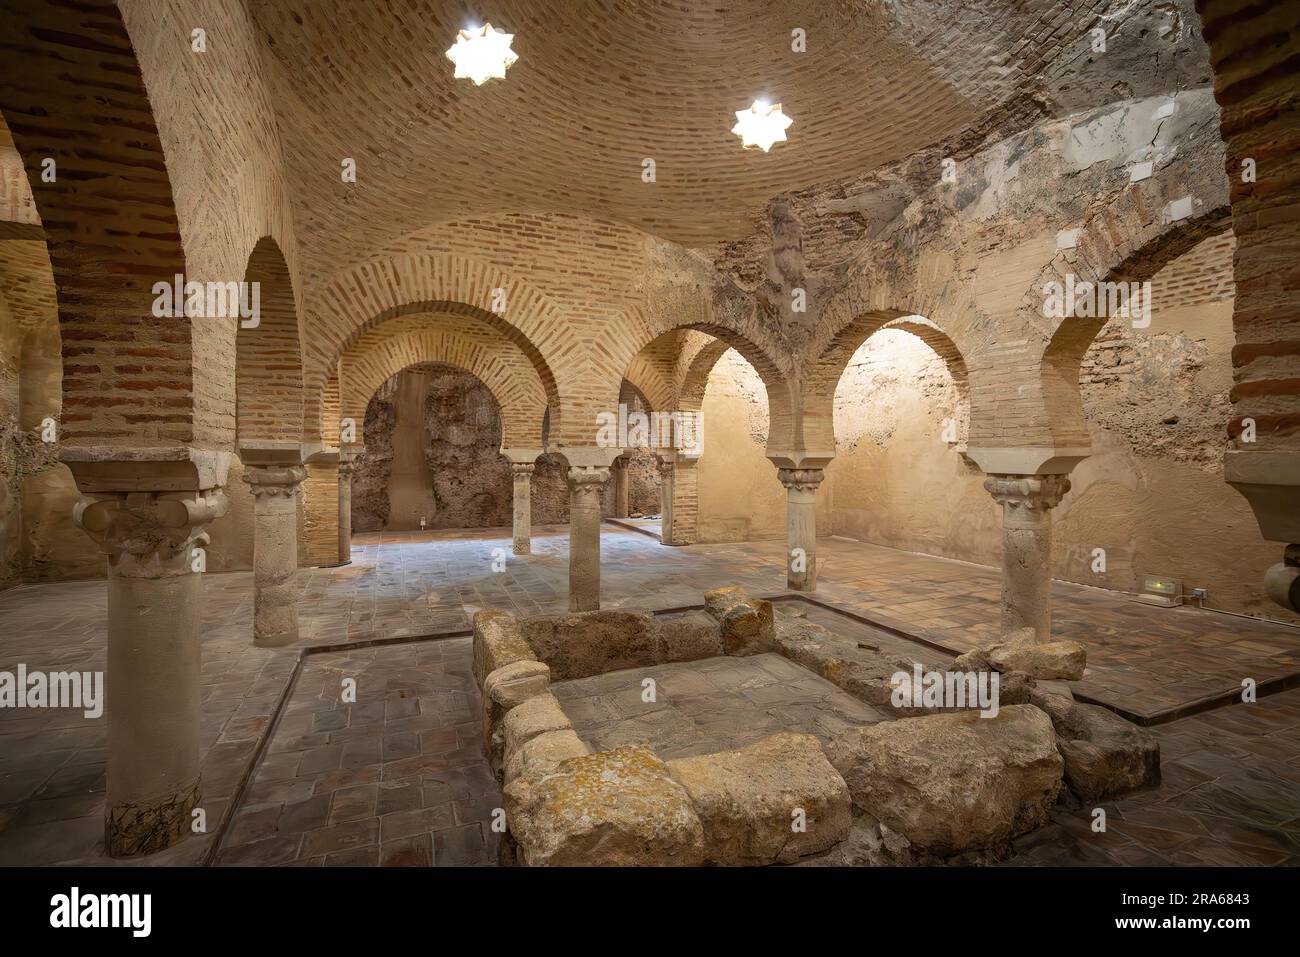 Grande et centrale salle chaude des bains arabes de Jaen - Jaen, Espagne Banque D'Images